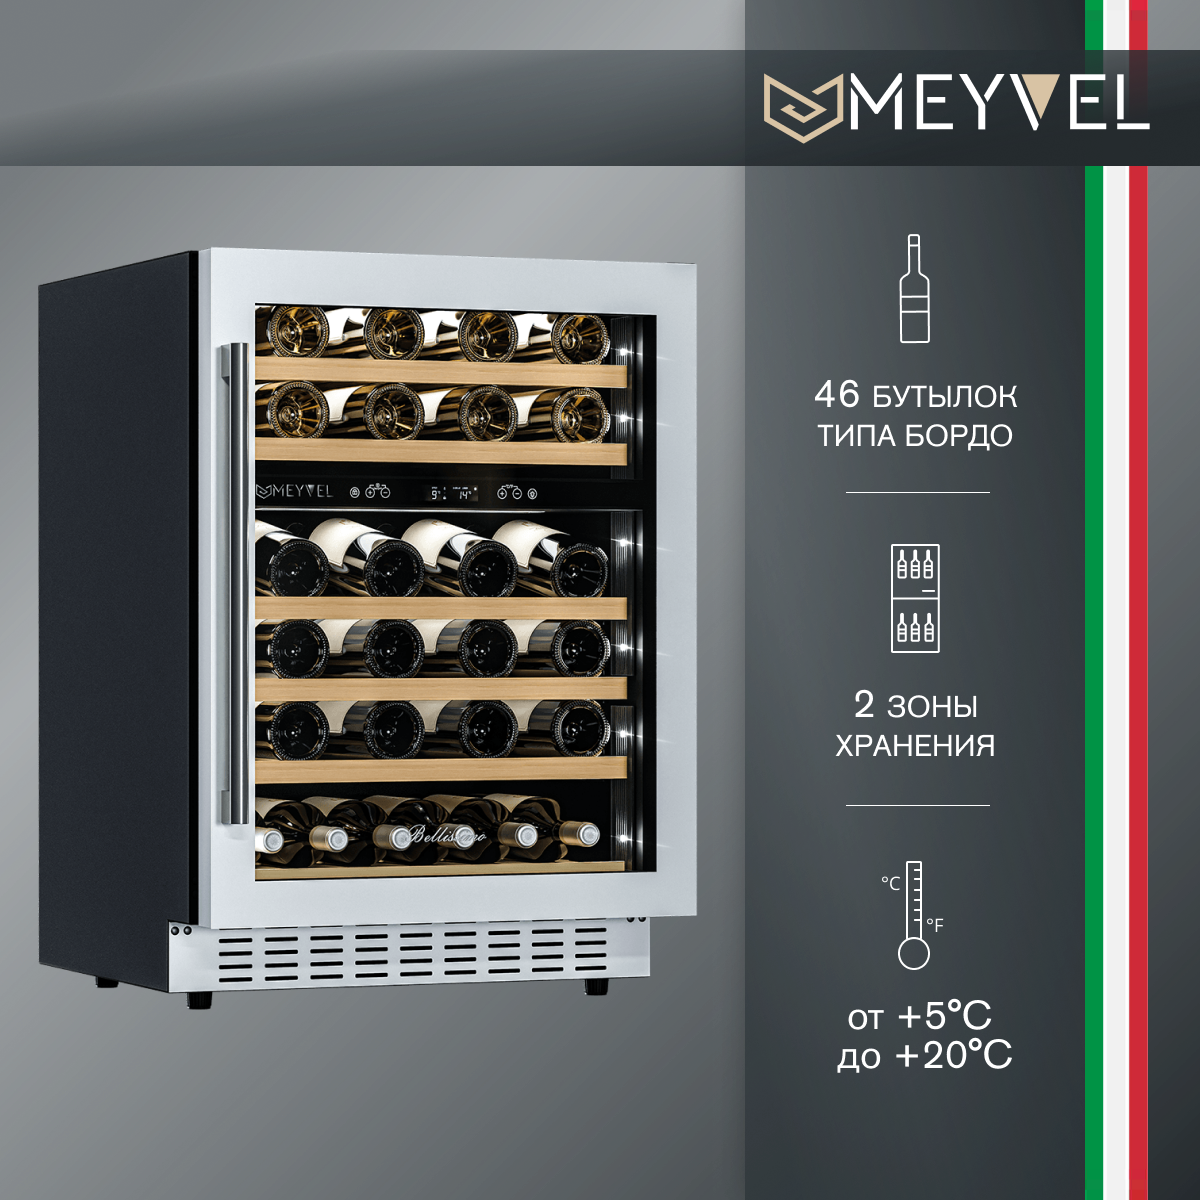 Встраиваемый винный шкаф Meyvel MV46PRO-KWT2 (компрессорный встраиваемый / отдельностоящий холодильник для вина на 46 бутылок)